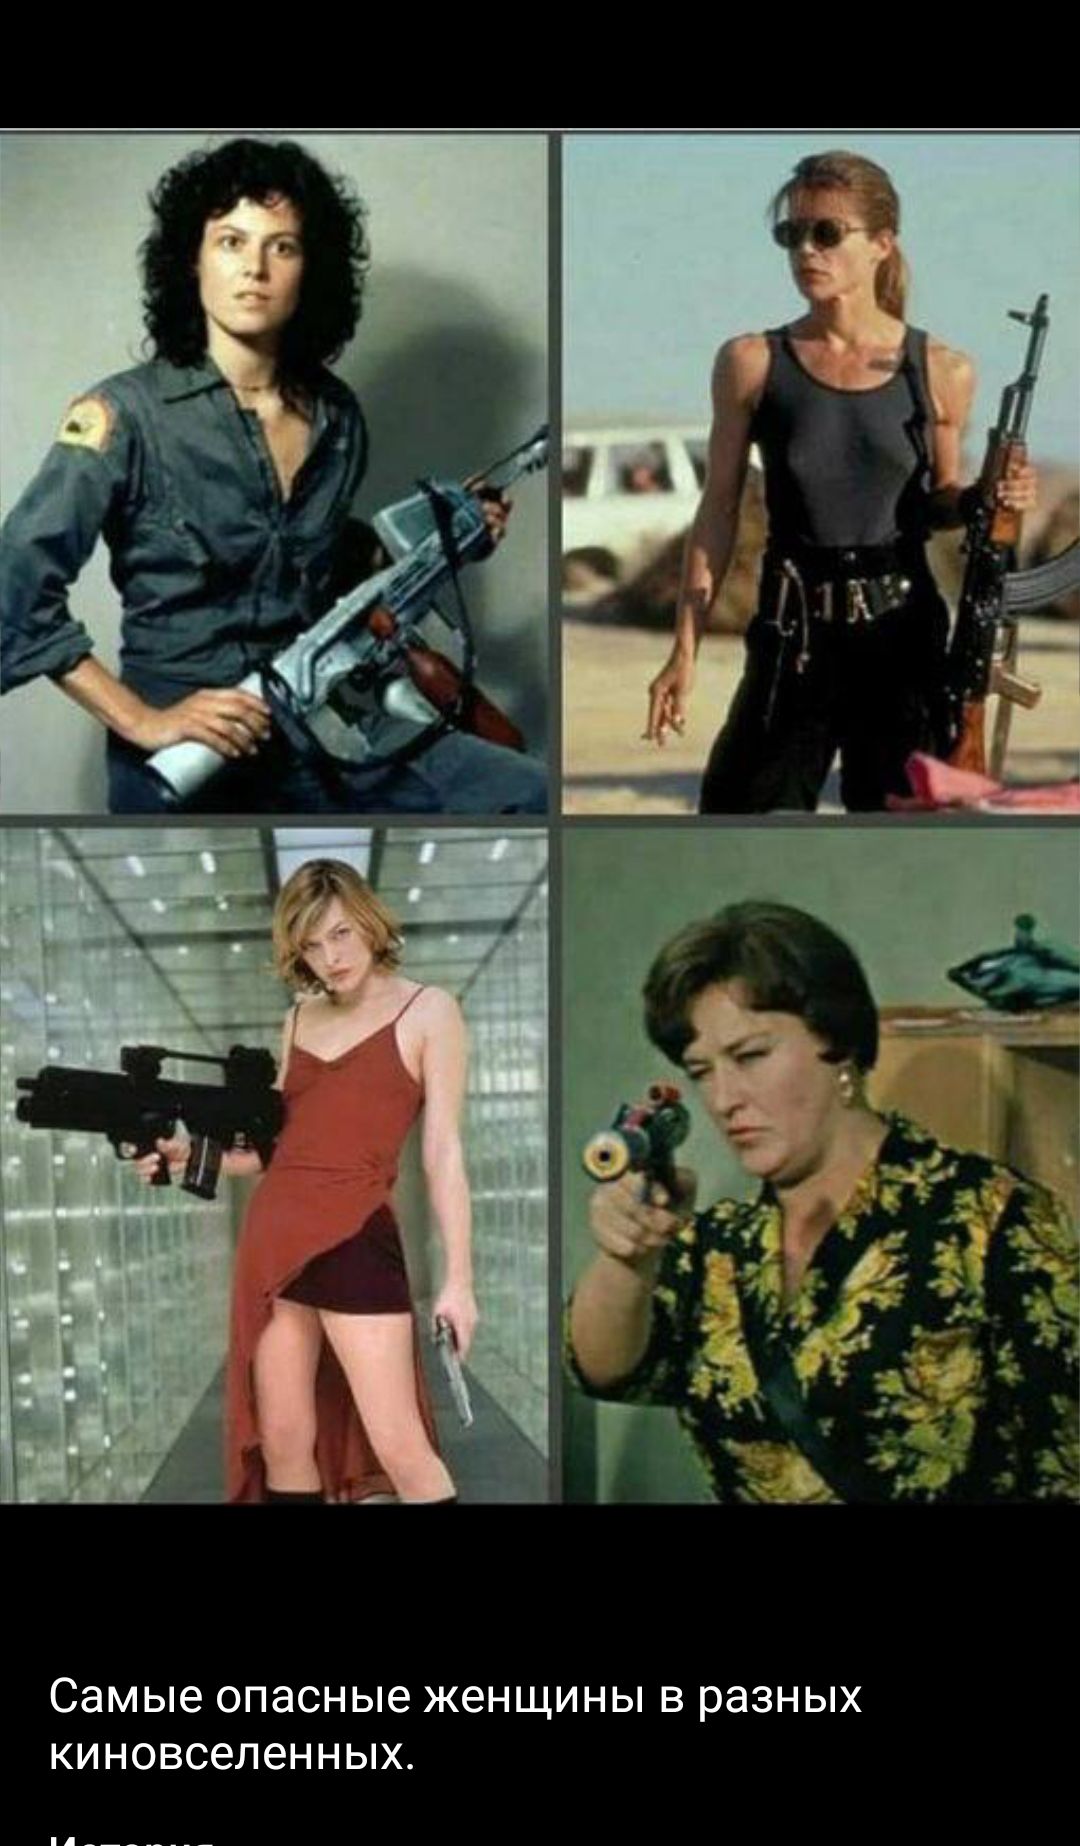 Самые опасные женщины в разных киновсепенных